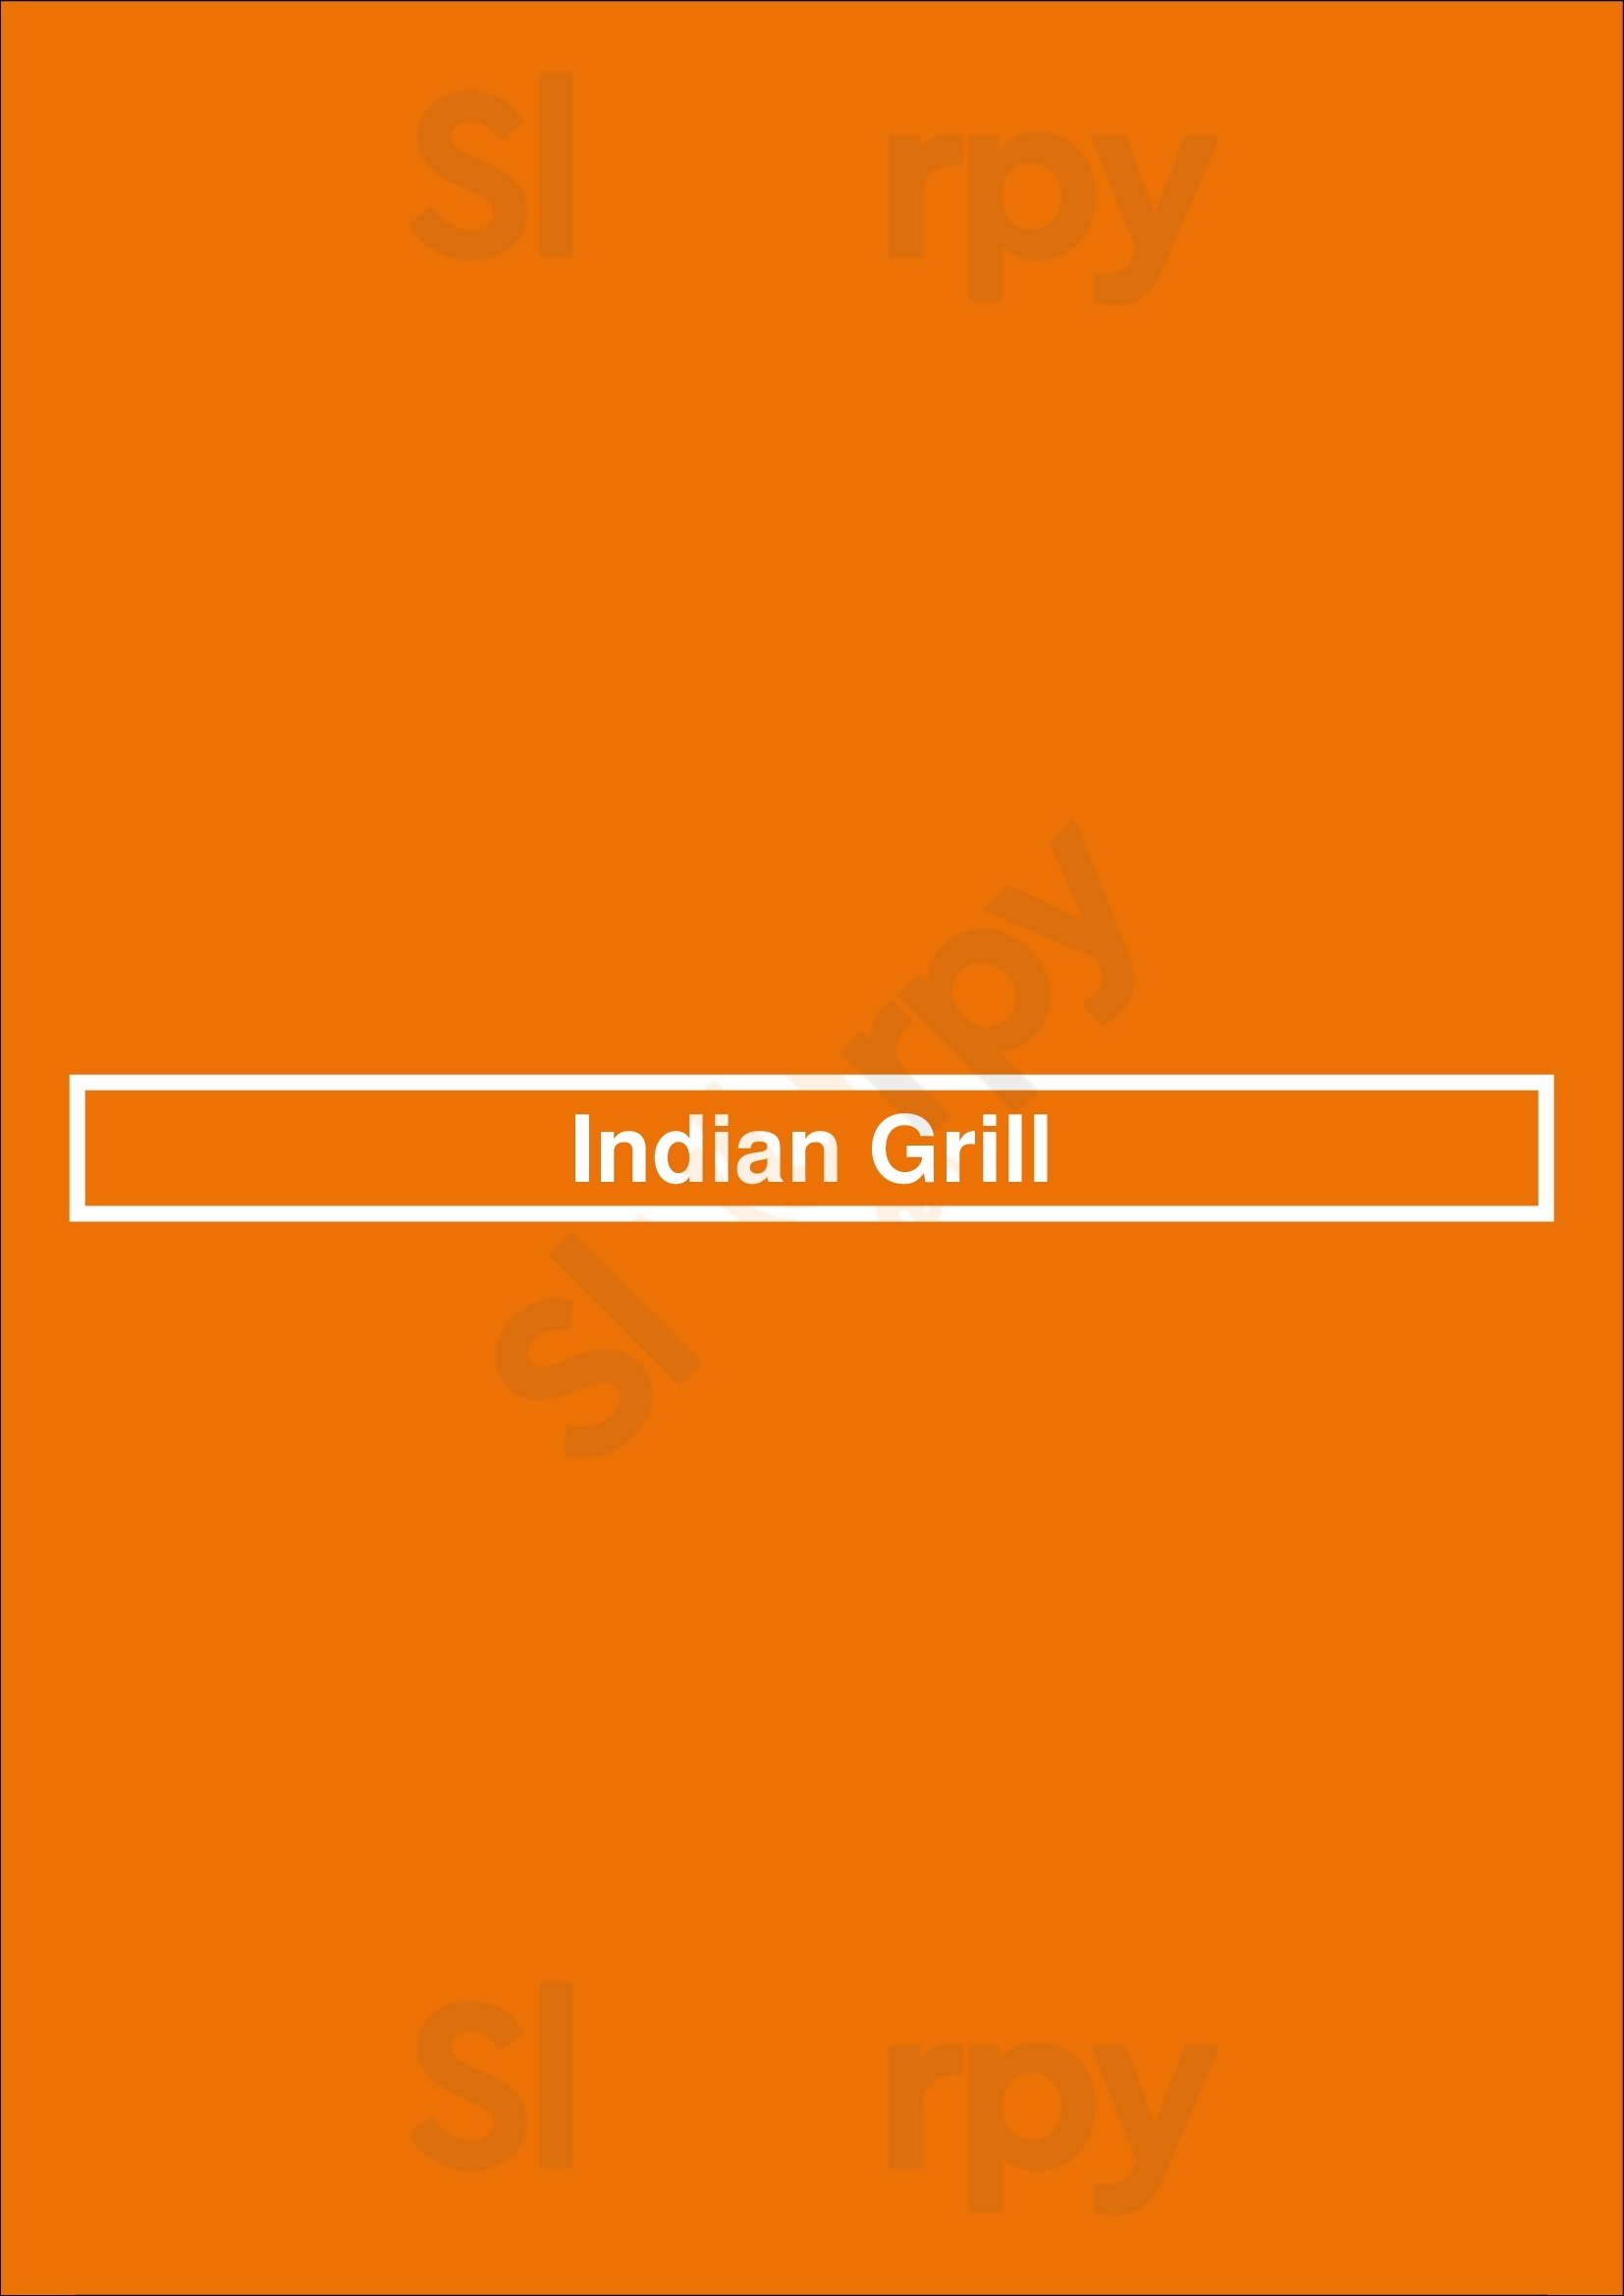 Indian Grill Toronto Menu - 1